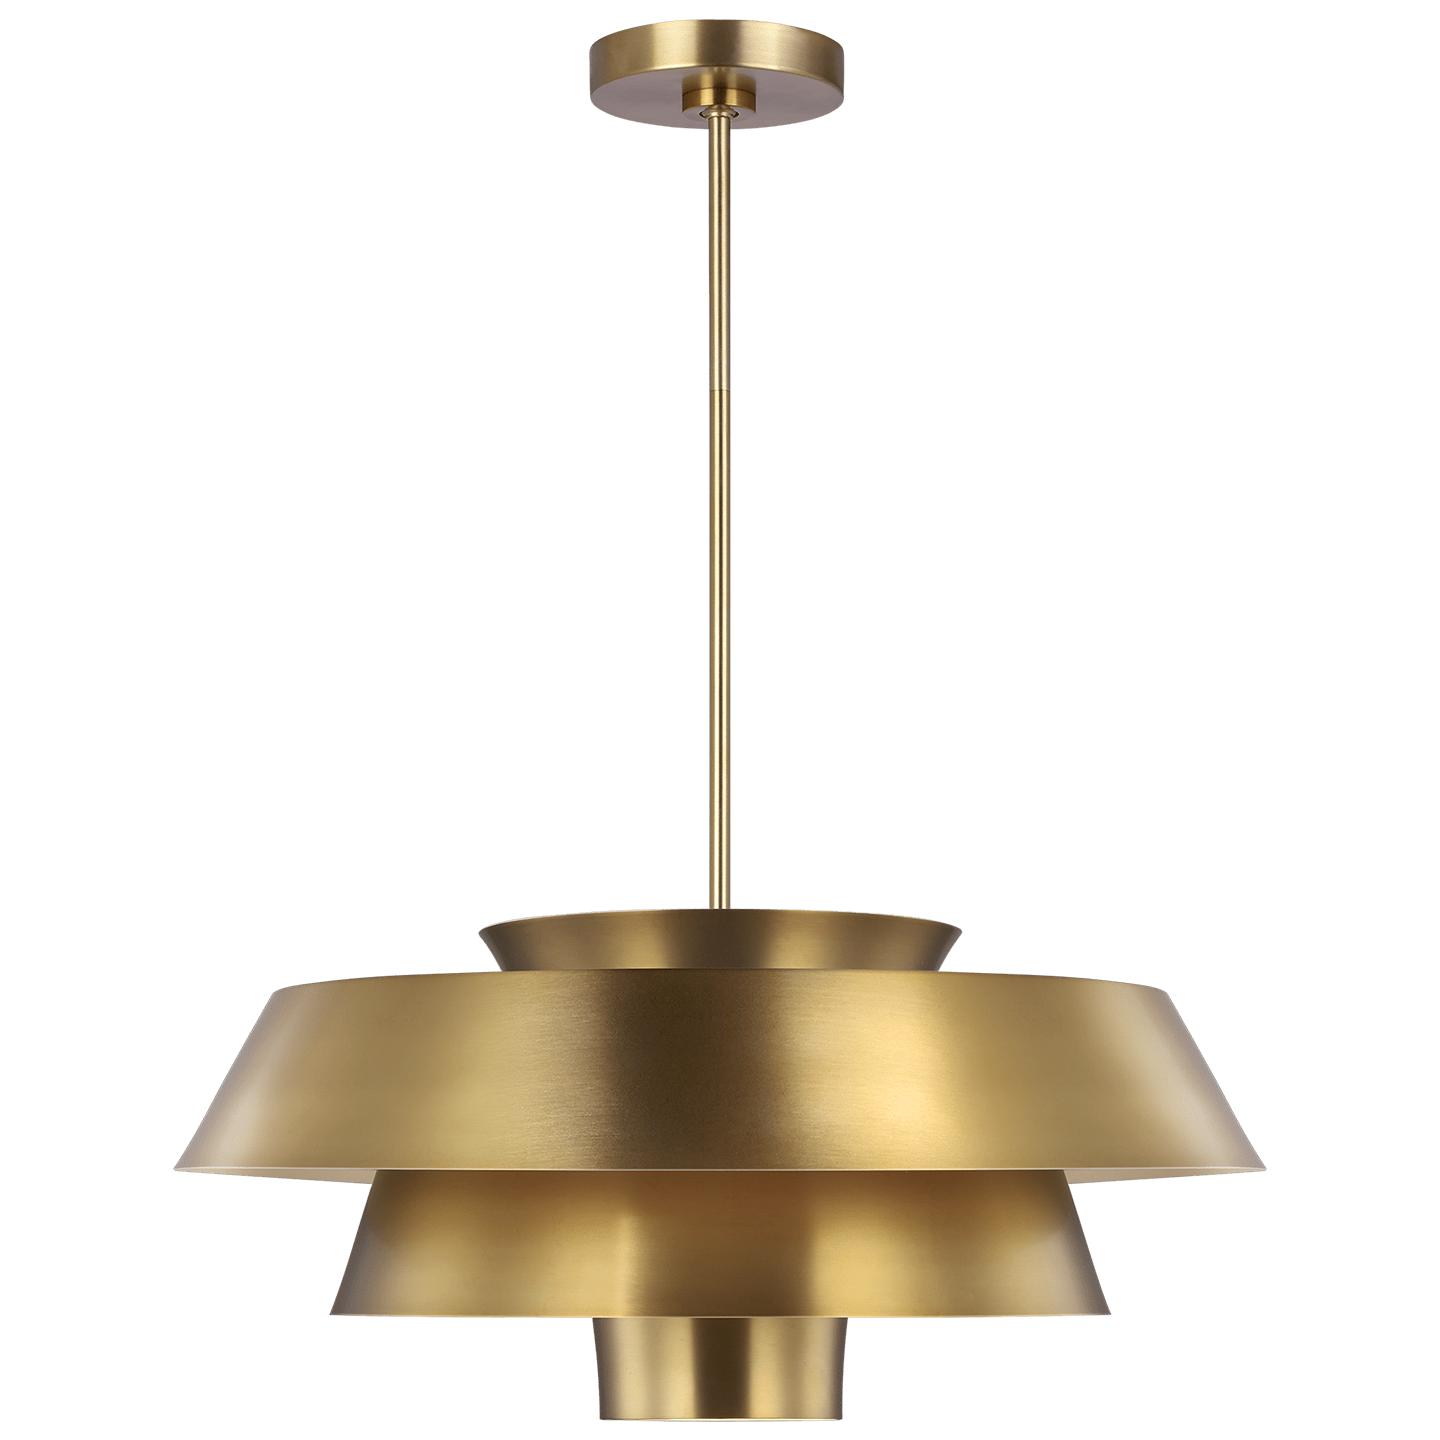 Купить Подвесной светильник Brisbin Large Pendant в интернет-магазине roooms.ru